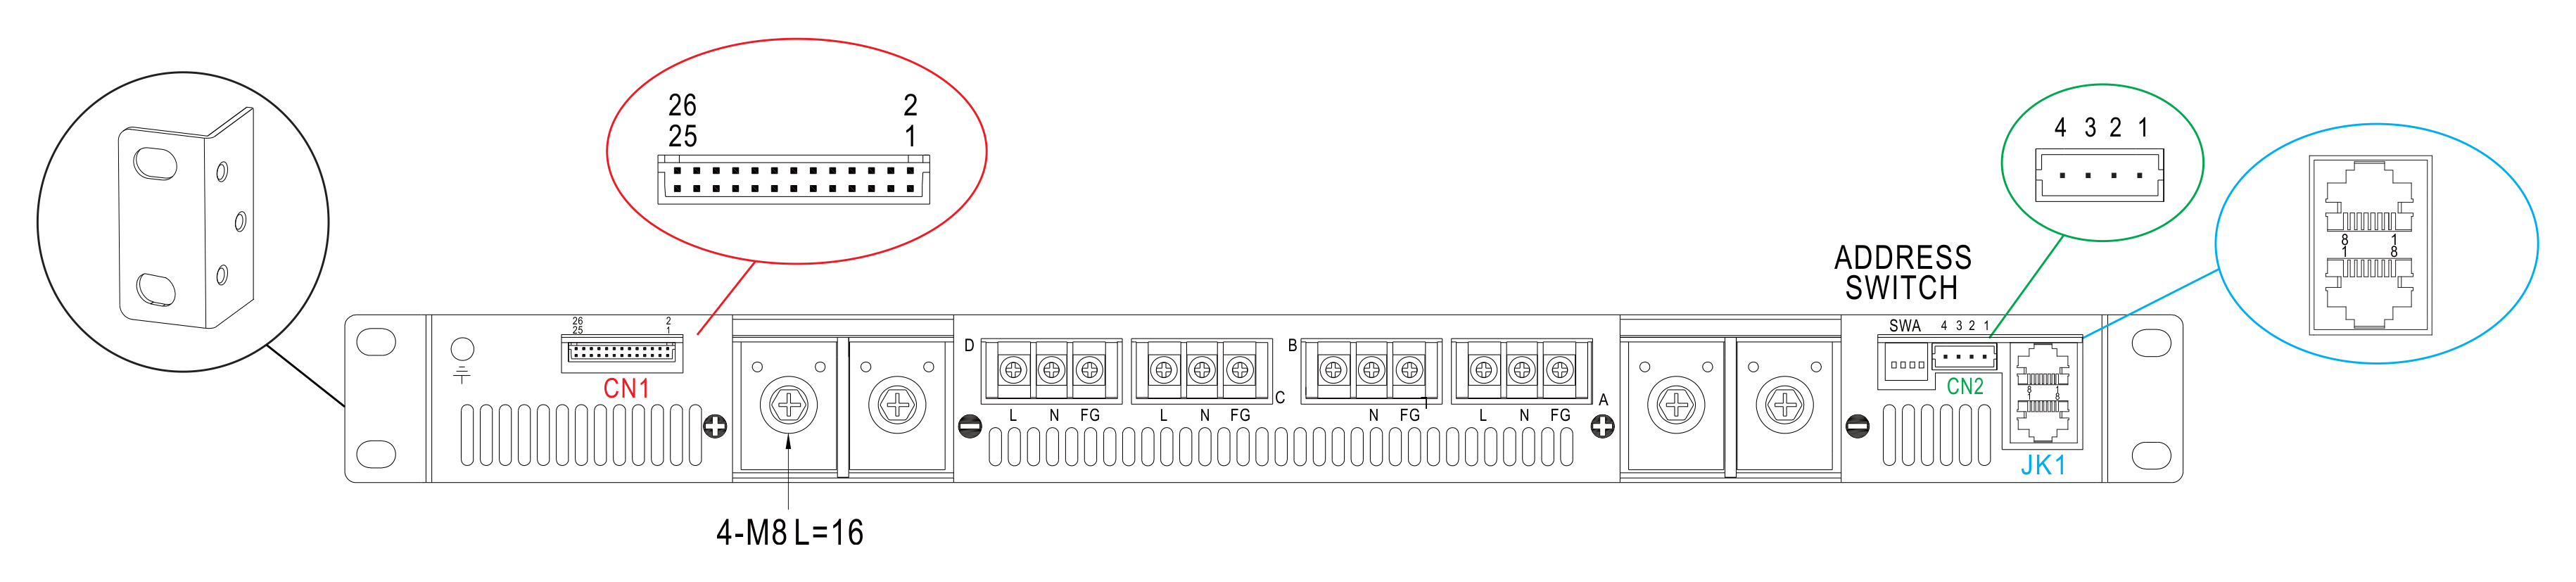 Рис. 21. Коммутационная панель rack-контейнера DHP-1UT-B